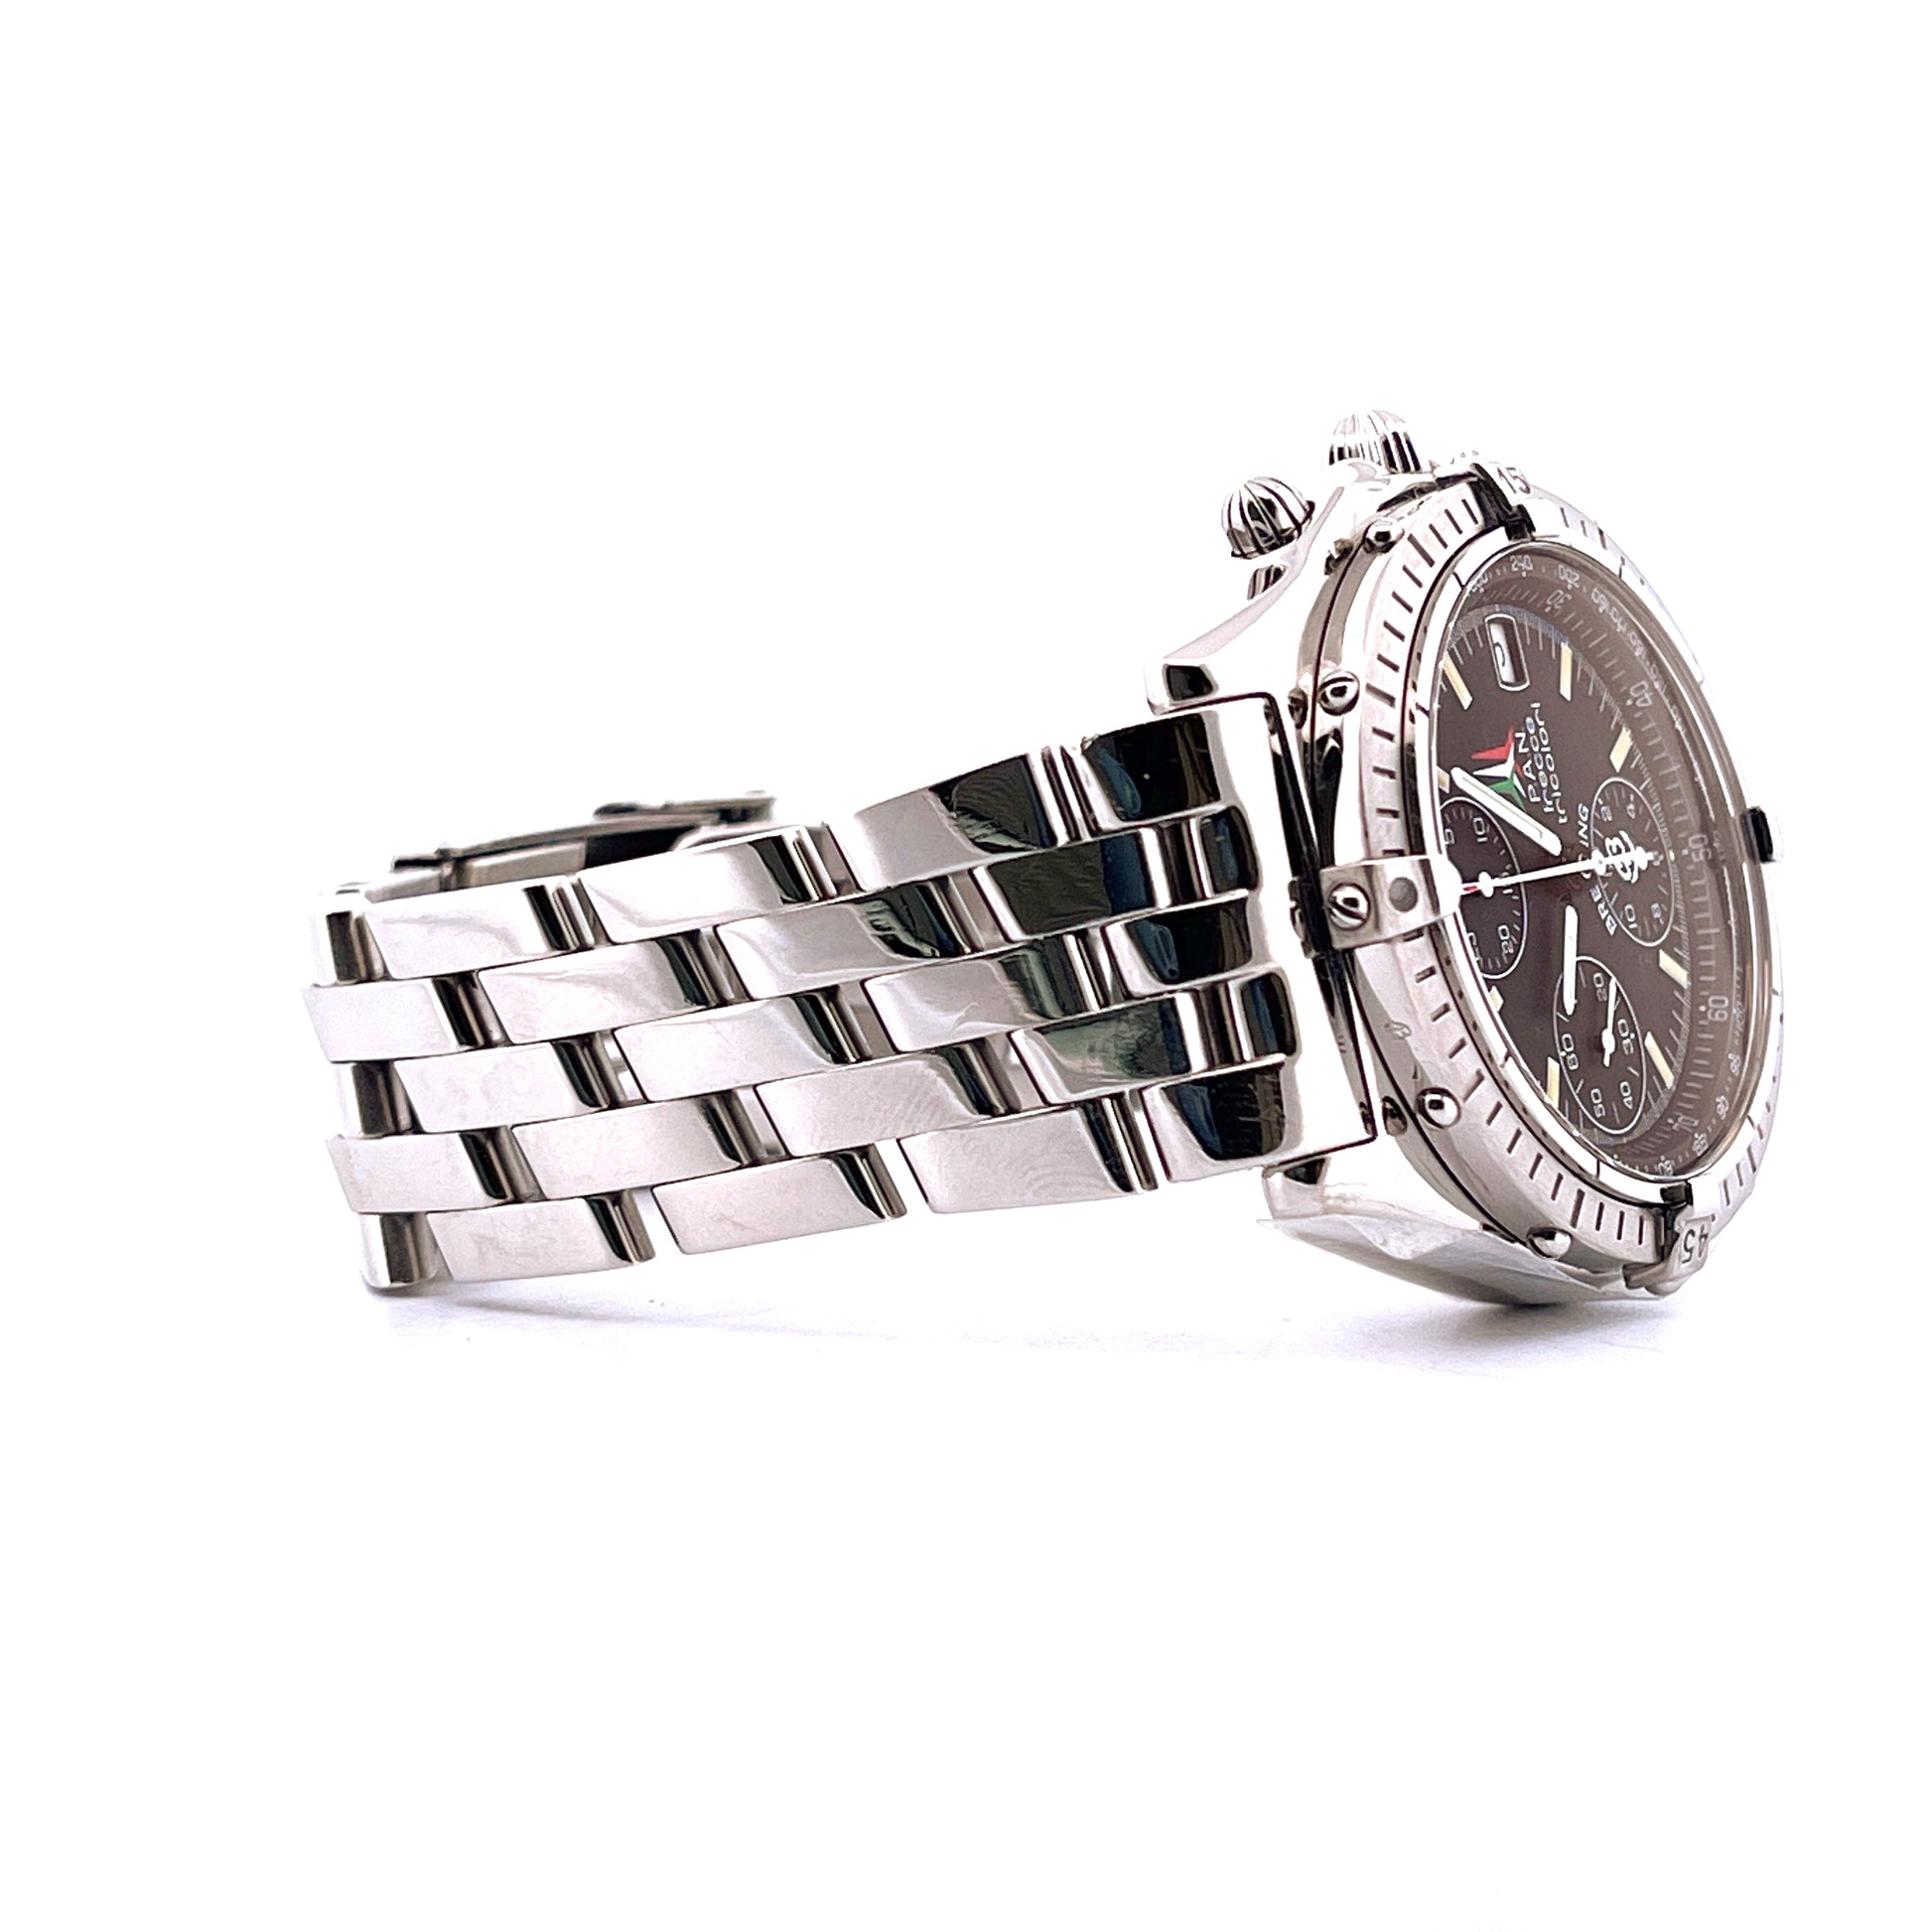 Breitling - Chronomat Frecce Tricolori - Juwelier Spliedt